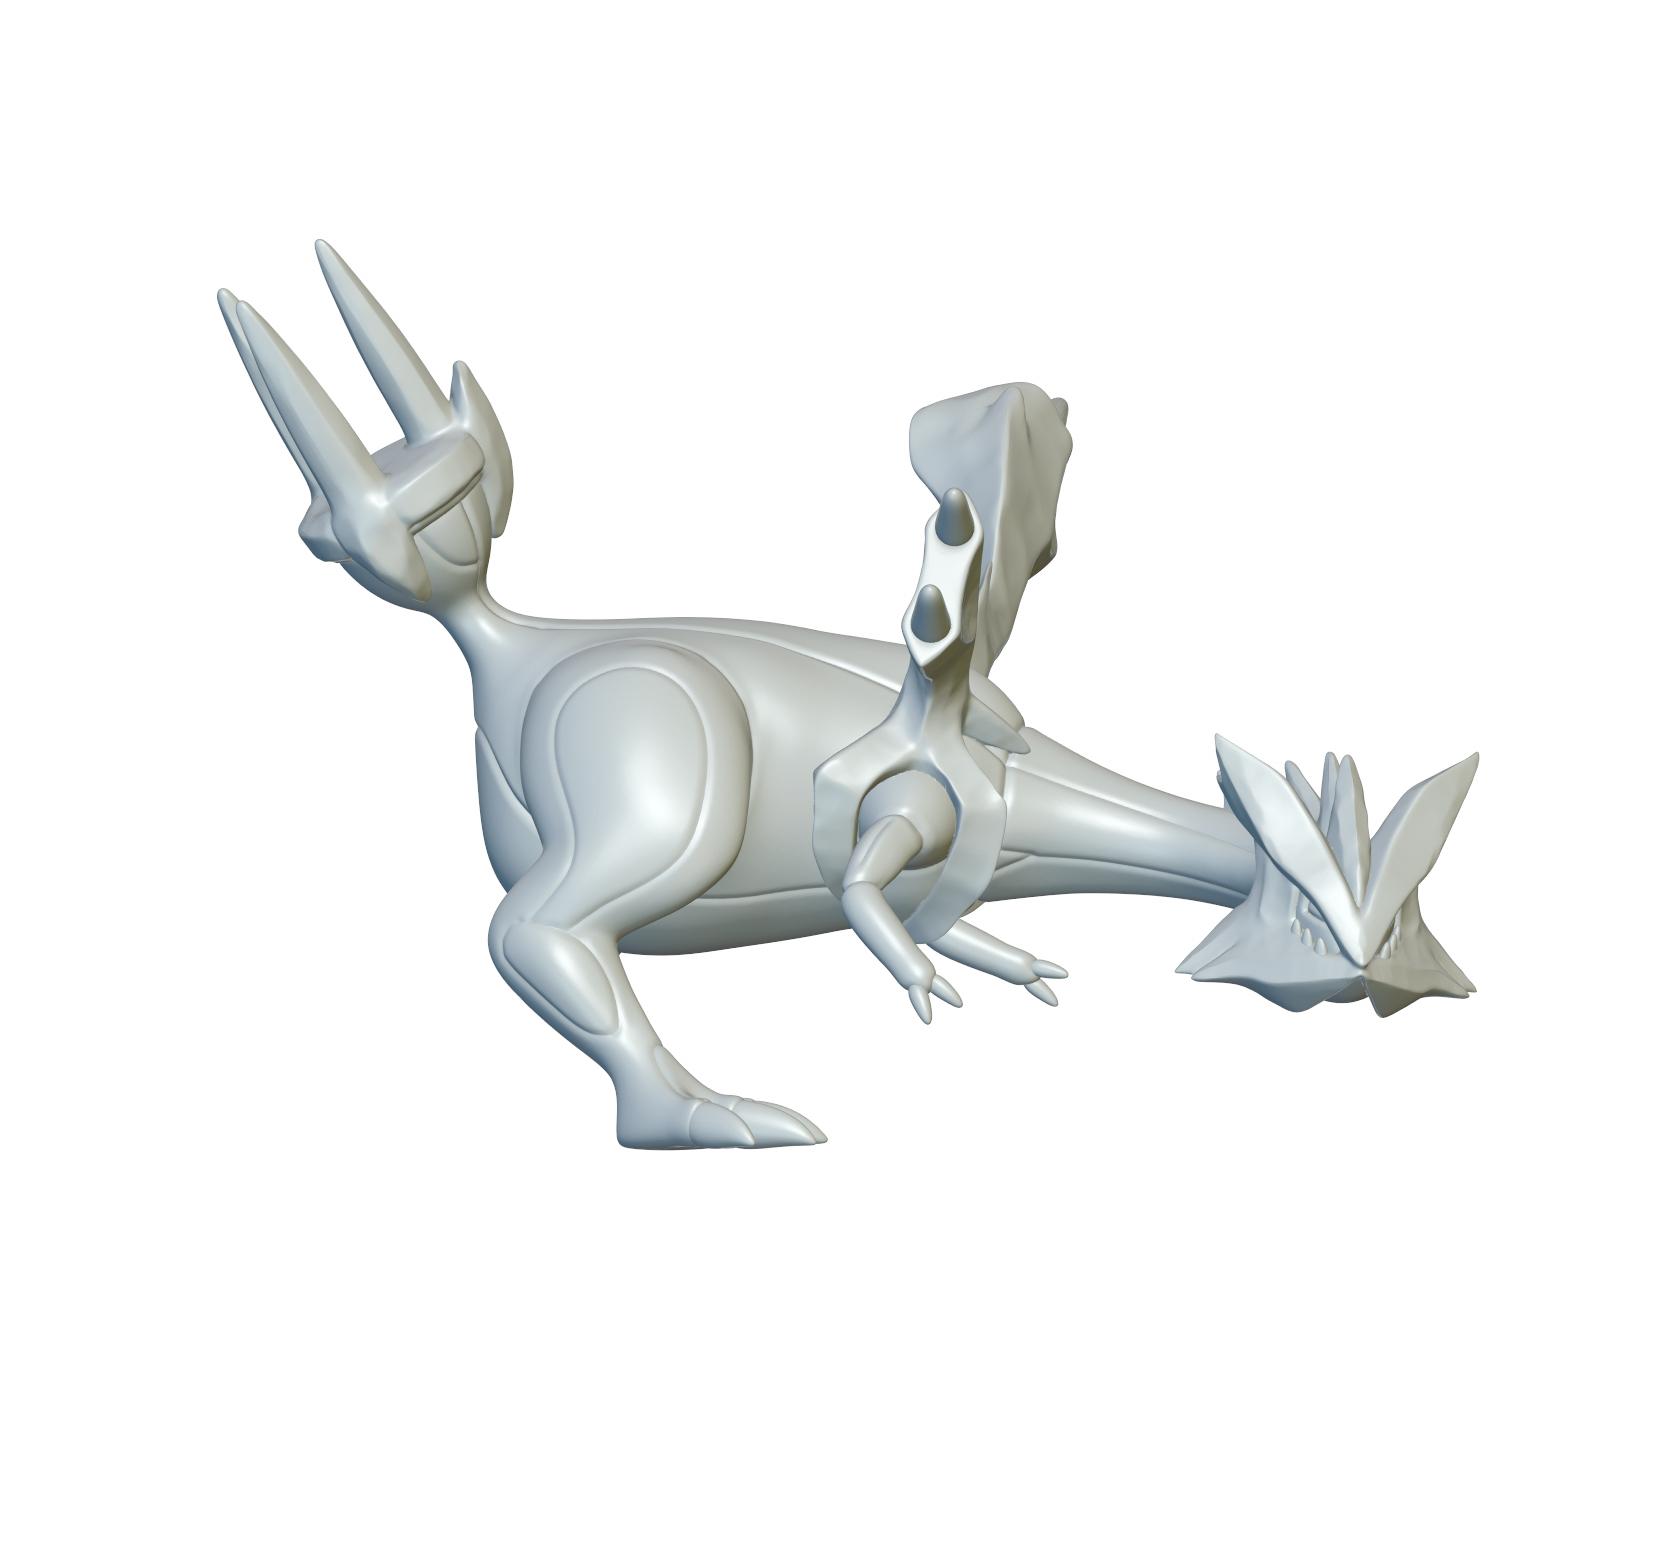 Pokemon Kyurem #646 - Optimized for 3D Printing 3d model